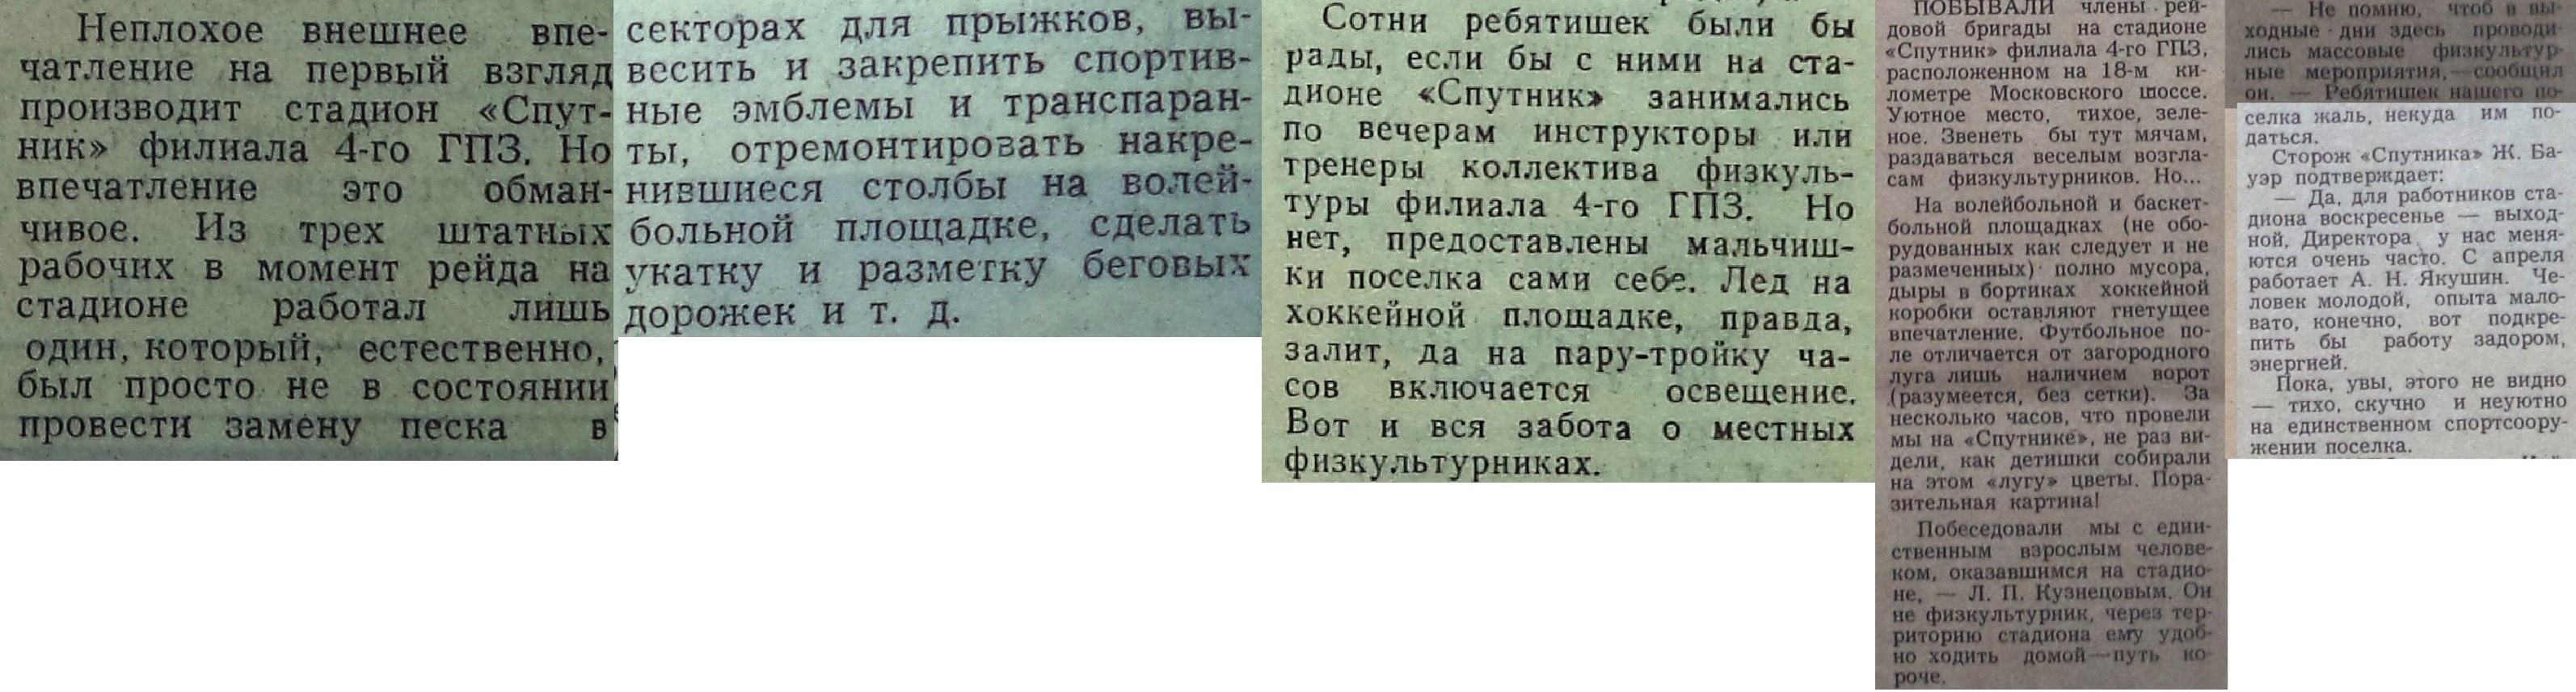 Спутник-ФОТО-04-ВЗя-1979-06-07-проблематика стадионов-min